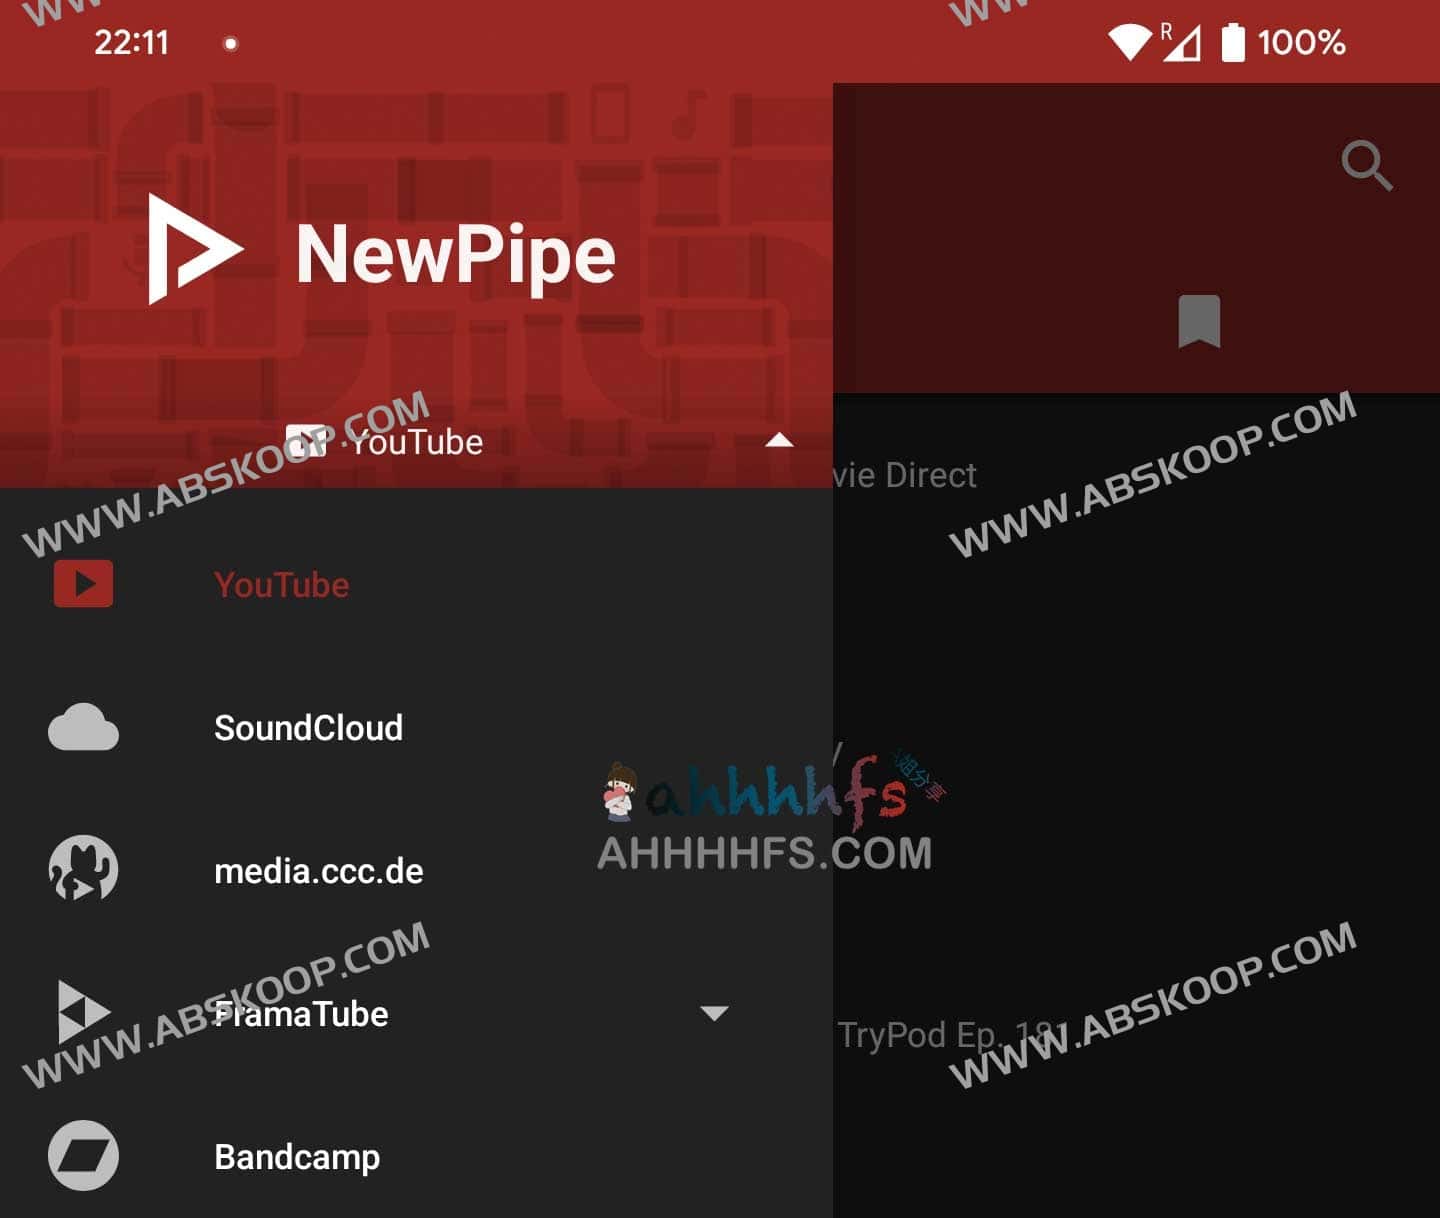 油管YouTube第三方客户端-去广告开源--NewPipe-多种服务